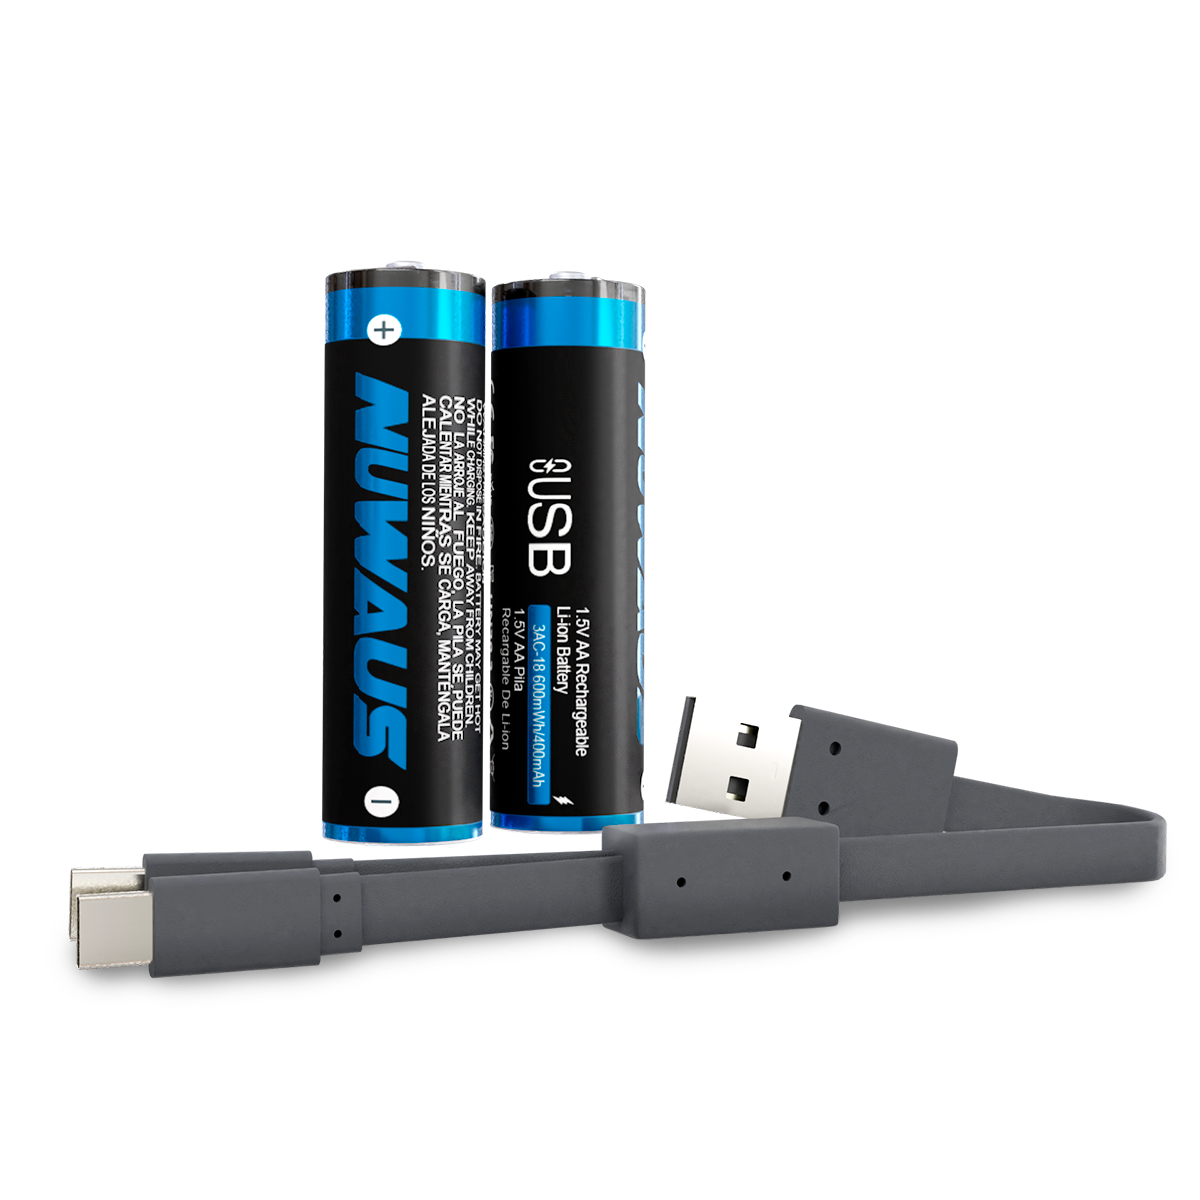 HITRENDS - Pilas AA, baterías de Litio Recargables USB Dual A